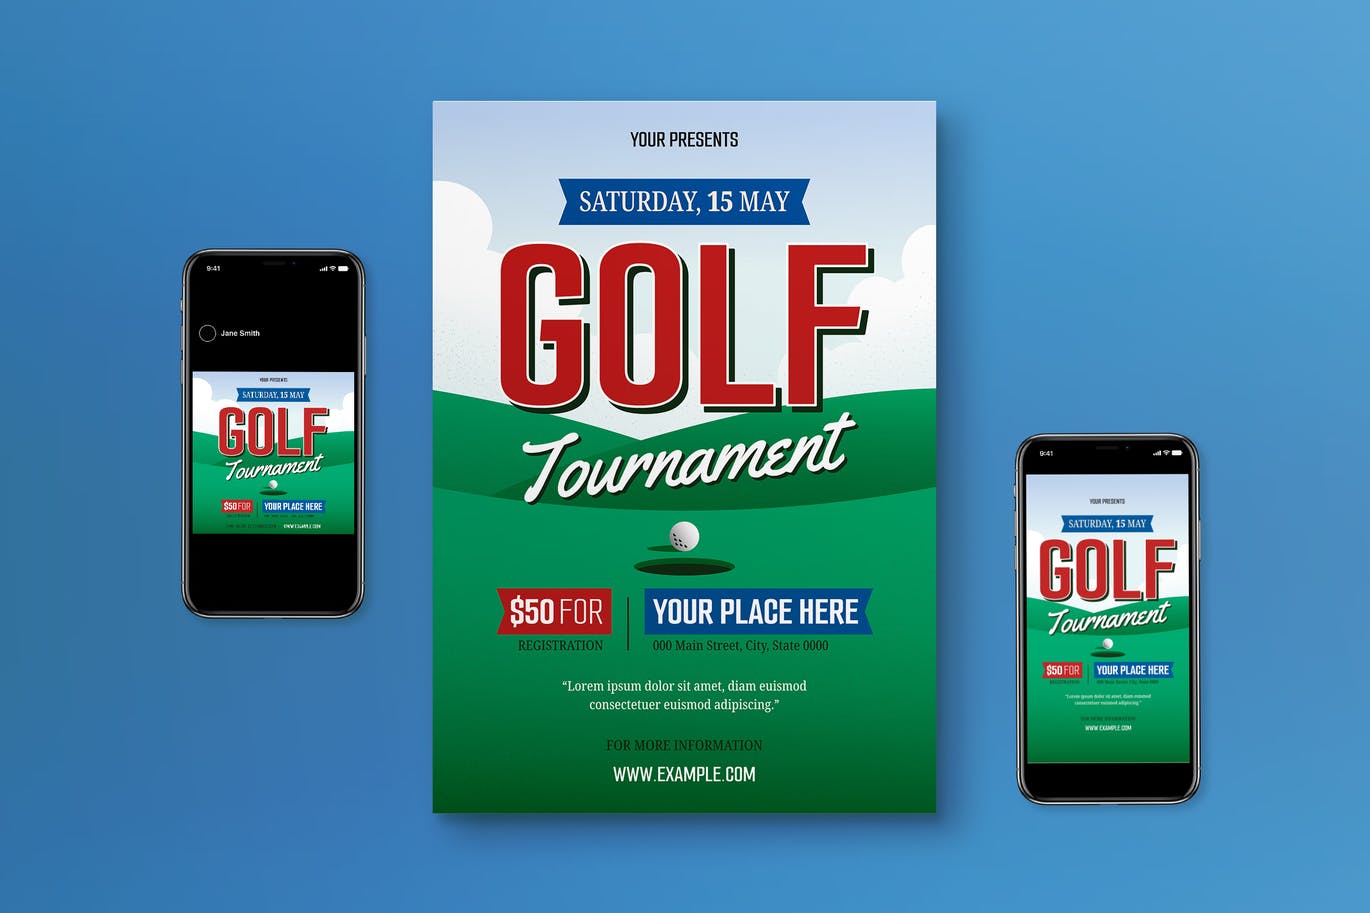 高尔夫比赛海报素材 Golf Tournament Flyer Set 设计素材 第1张